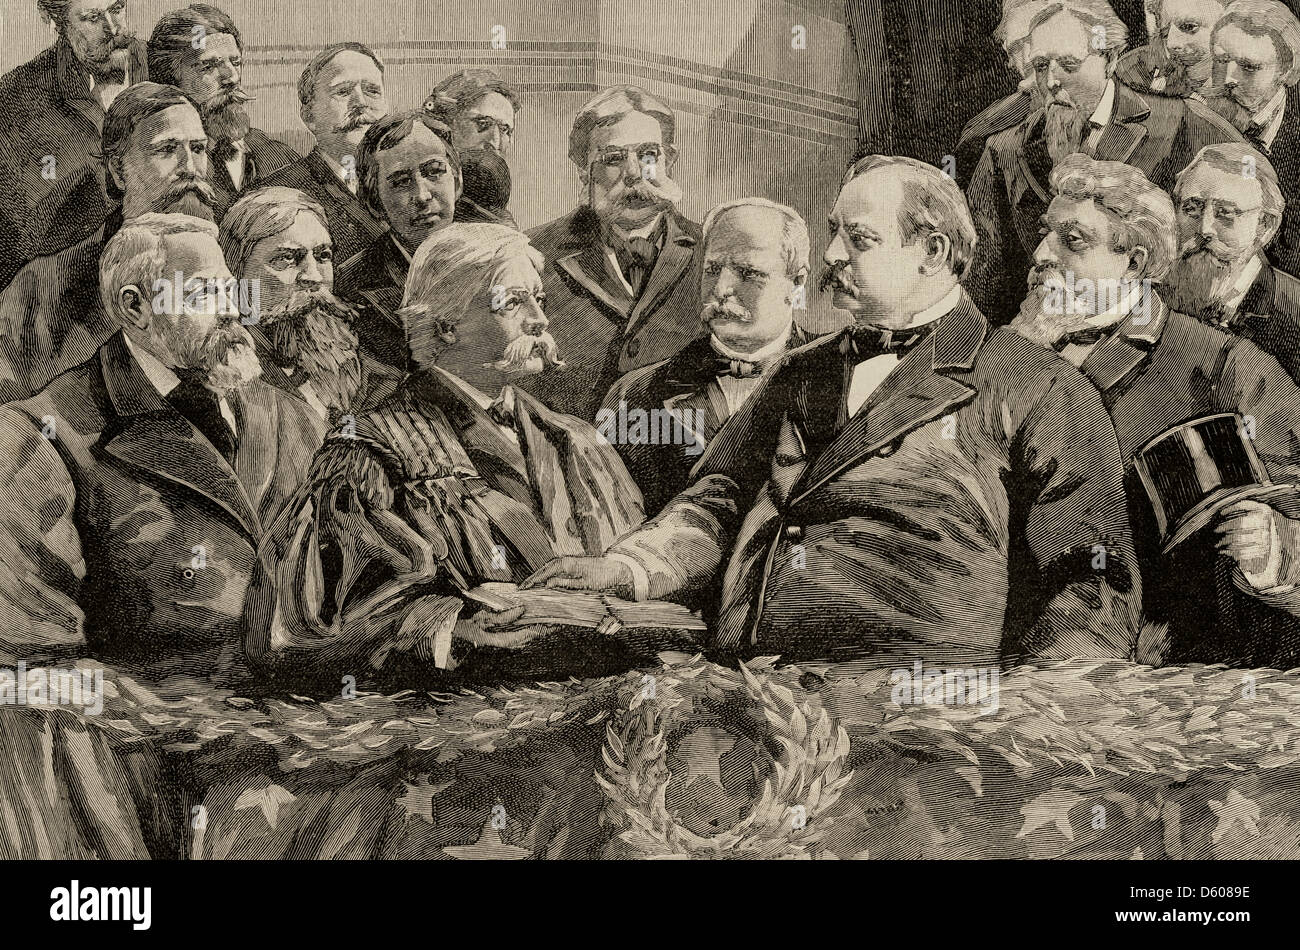 Grover Cleveland (1837-1908). Präsident der Vereinigten Staaten. Proklamation des Präsidenten Cleveland. Gravur. Stockfoto